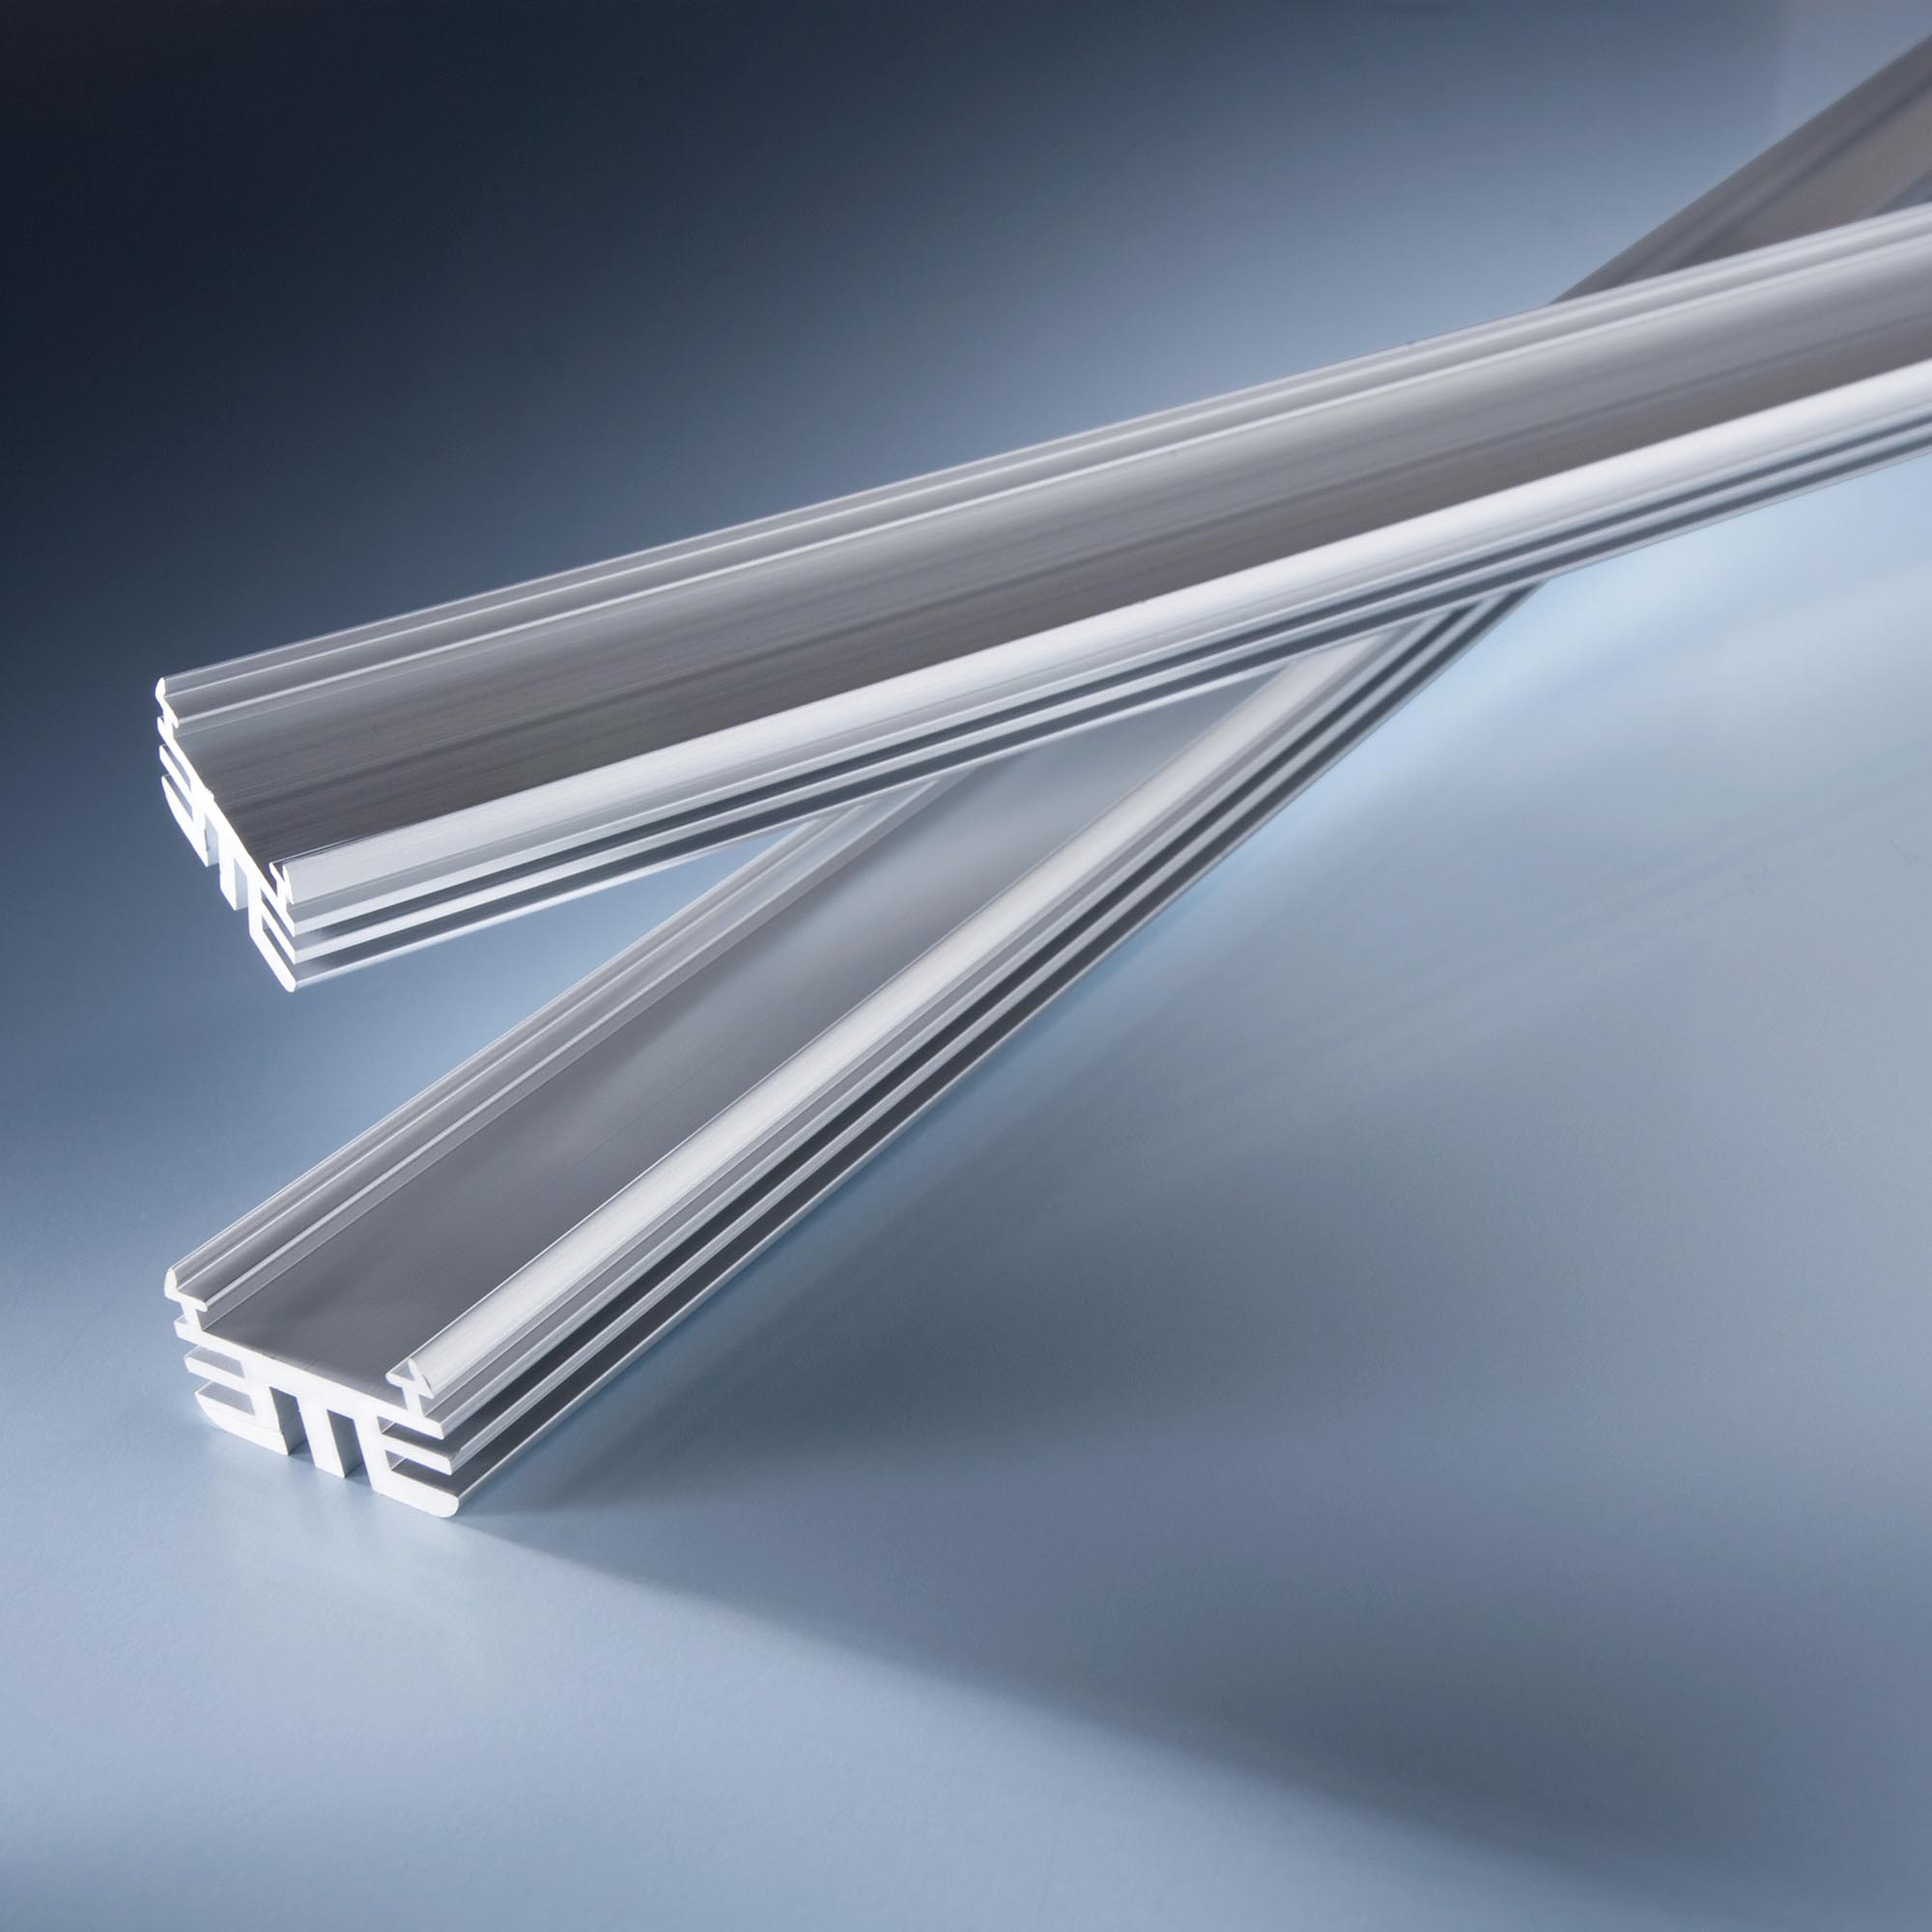 Aluminum profile Alumax 23.63" 60cm for high power LED strips